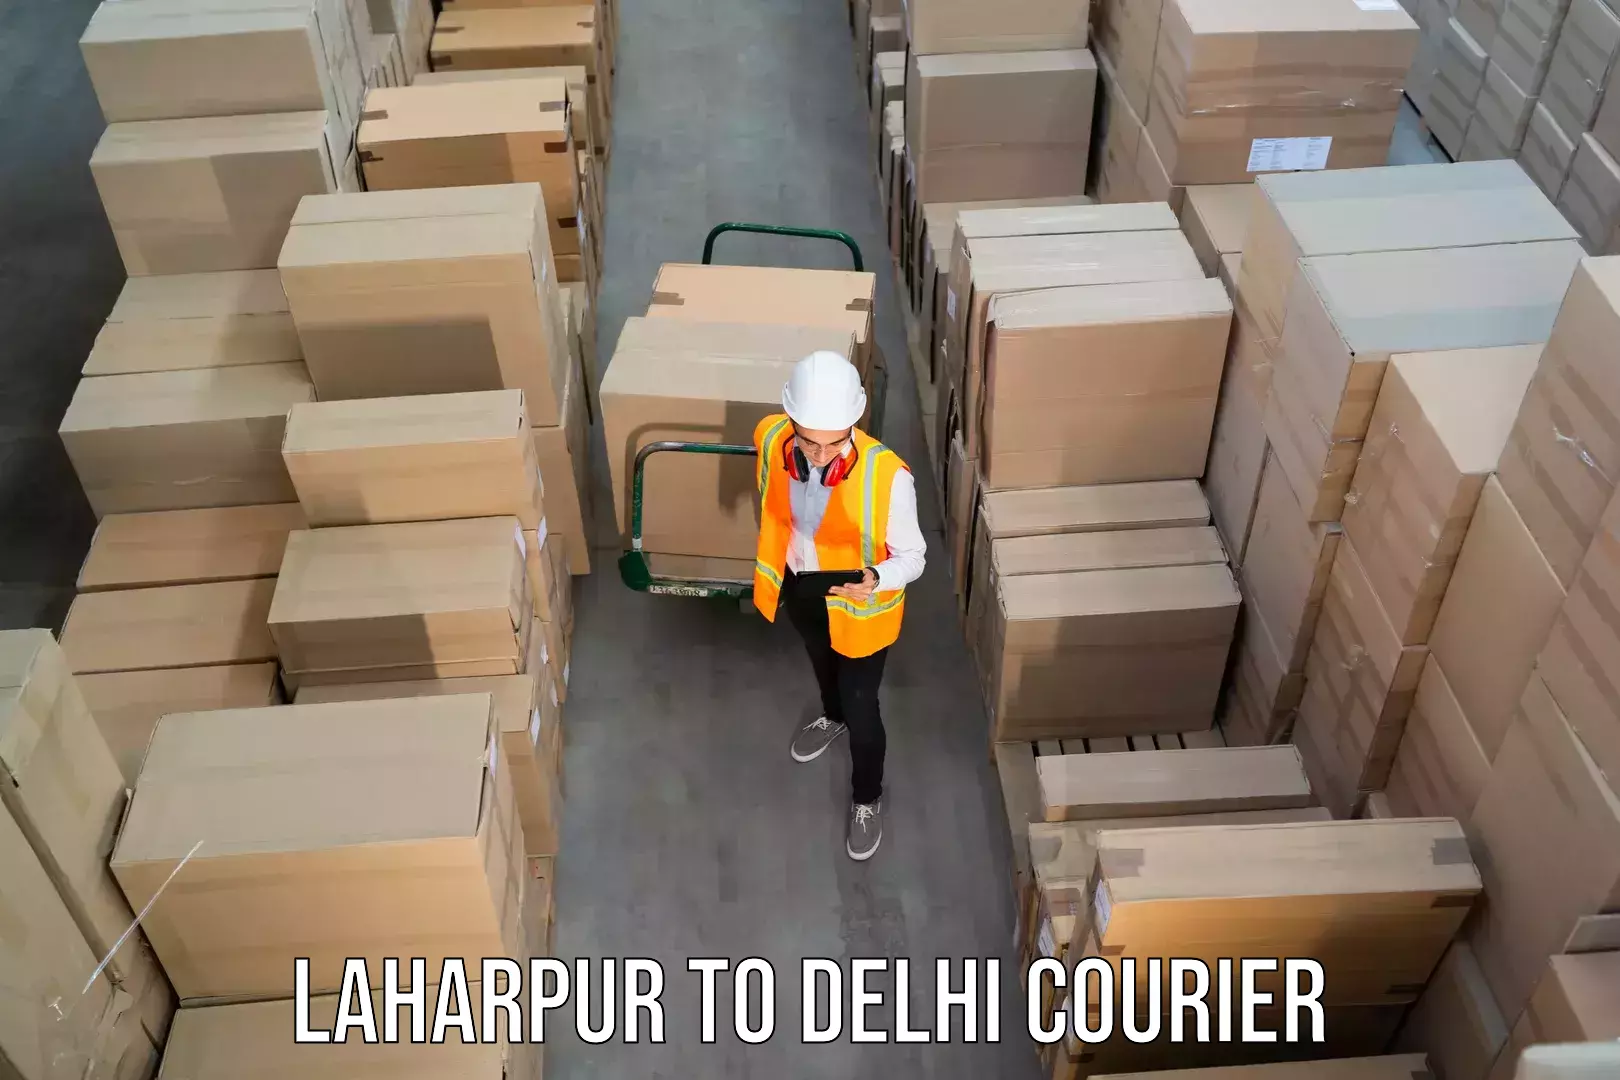 Courier insurance Laharpur to Jawaharlal Nehru University New Delhi